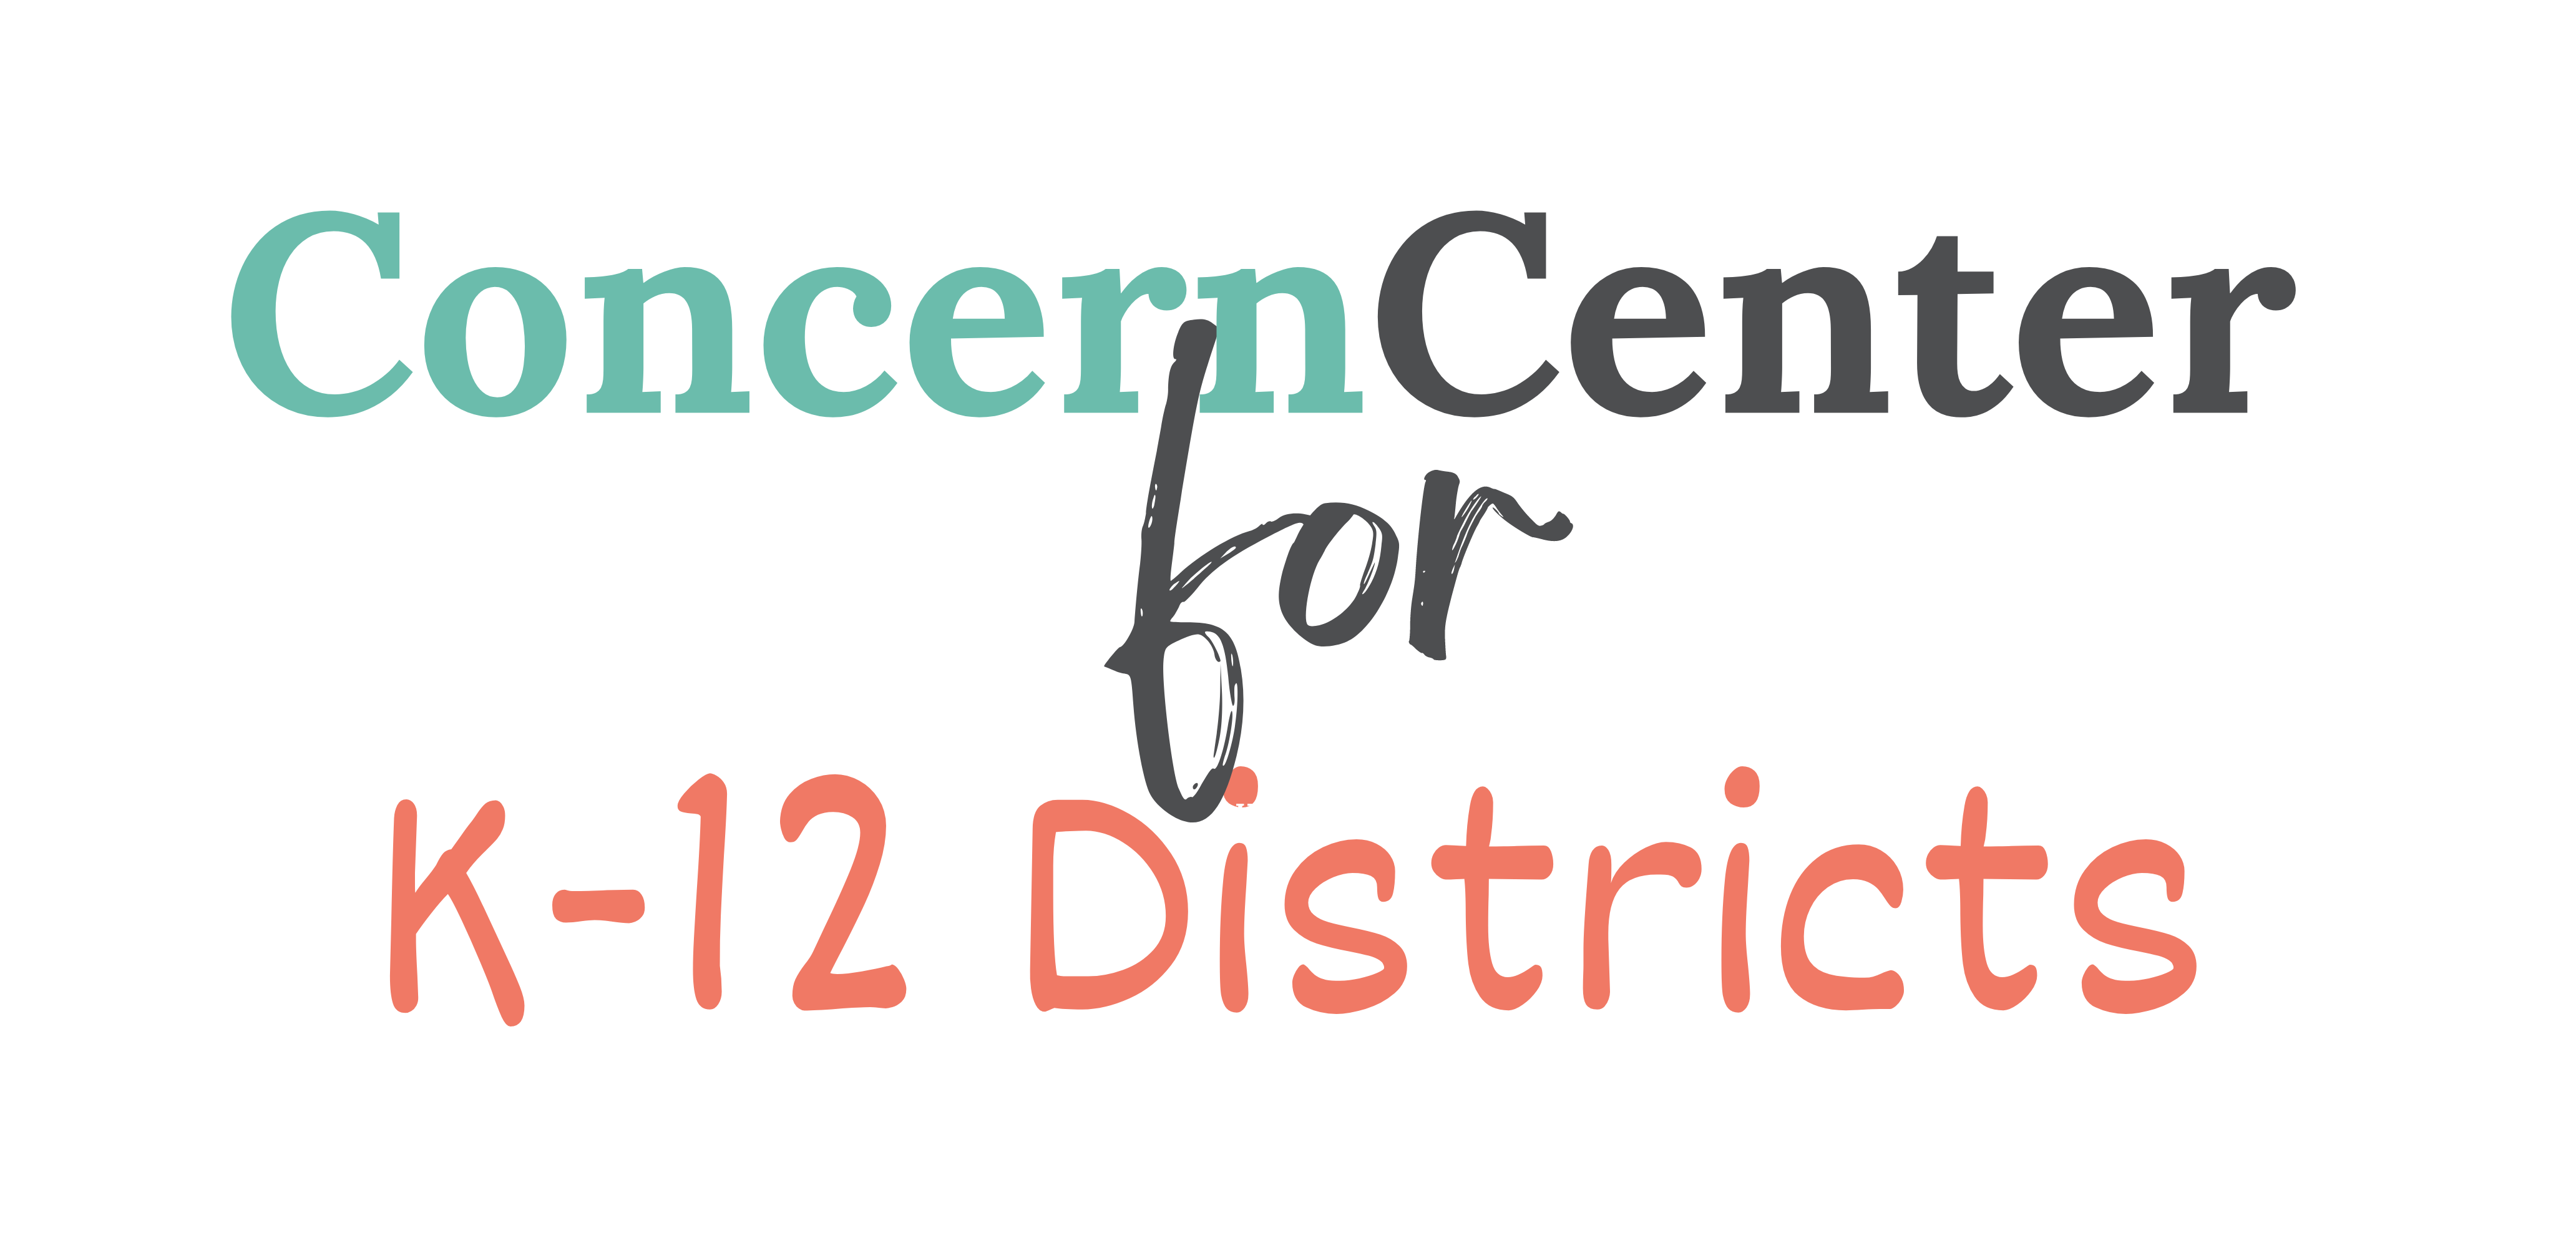 ConcernCenter for K12 Distrcts